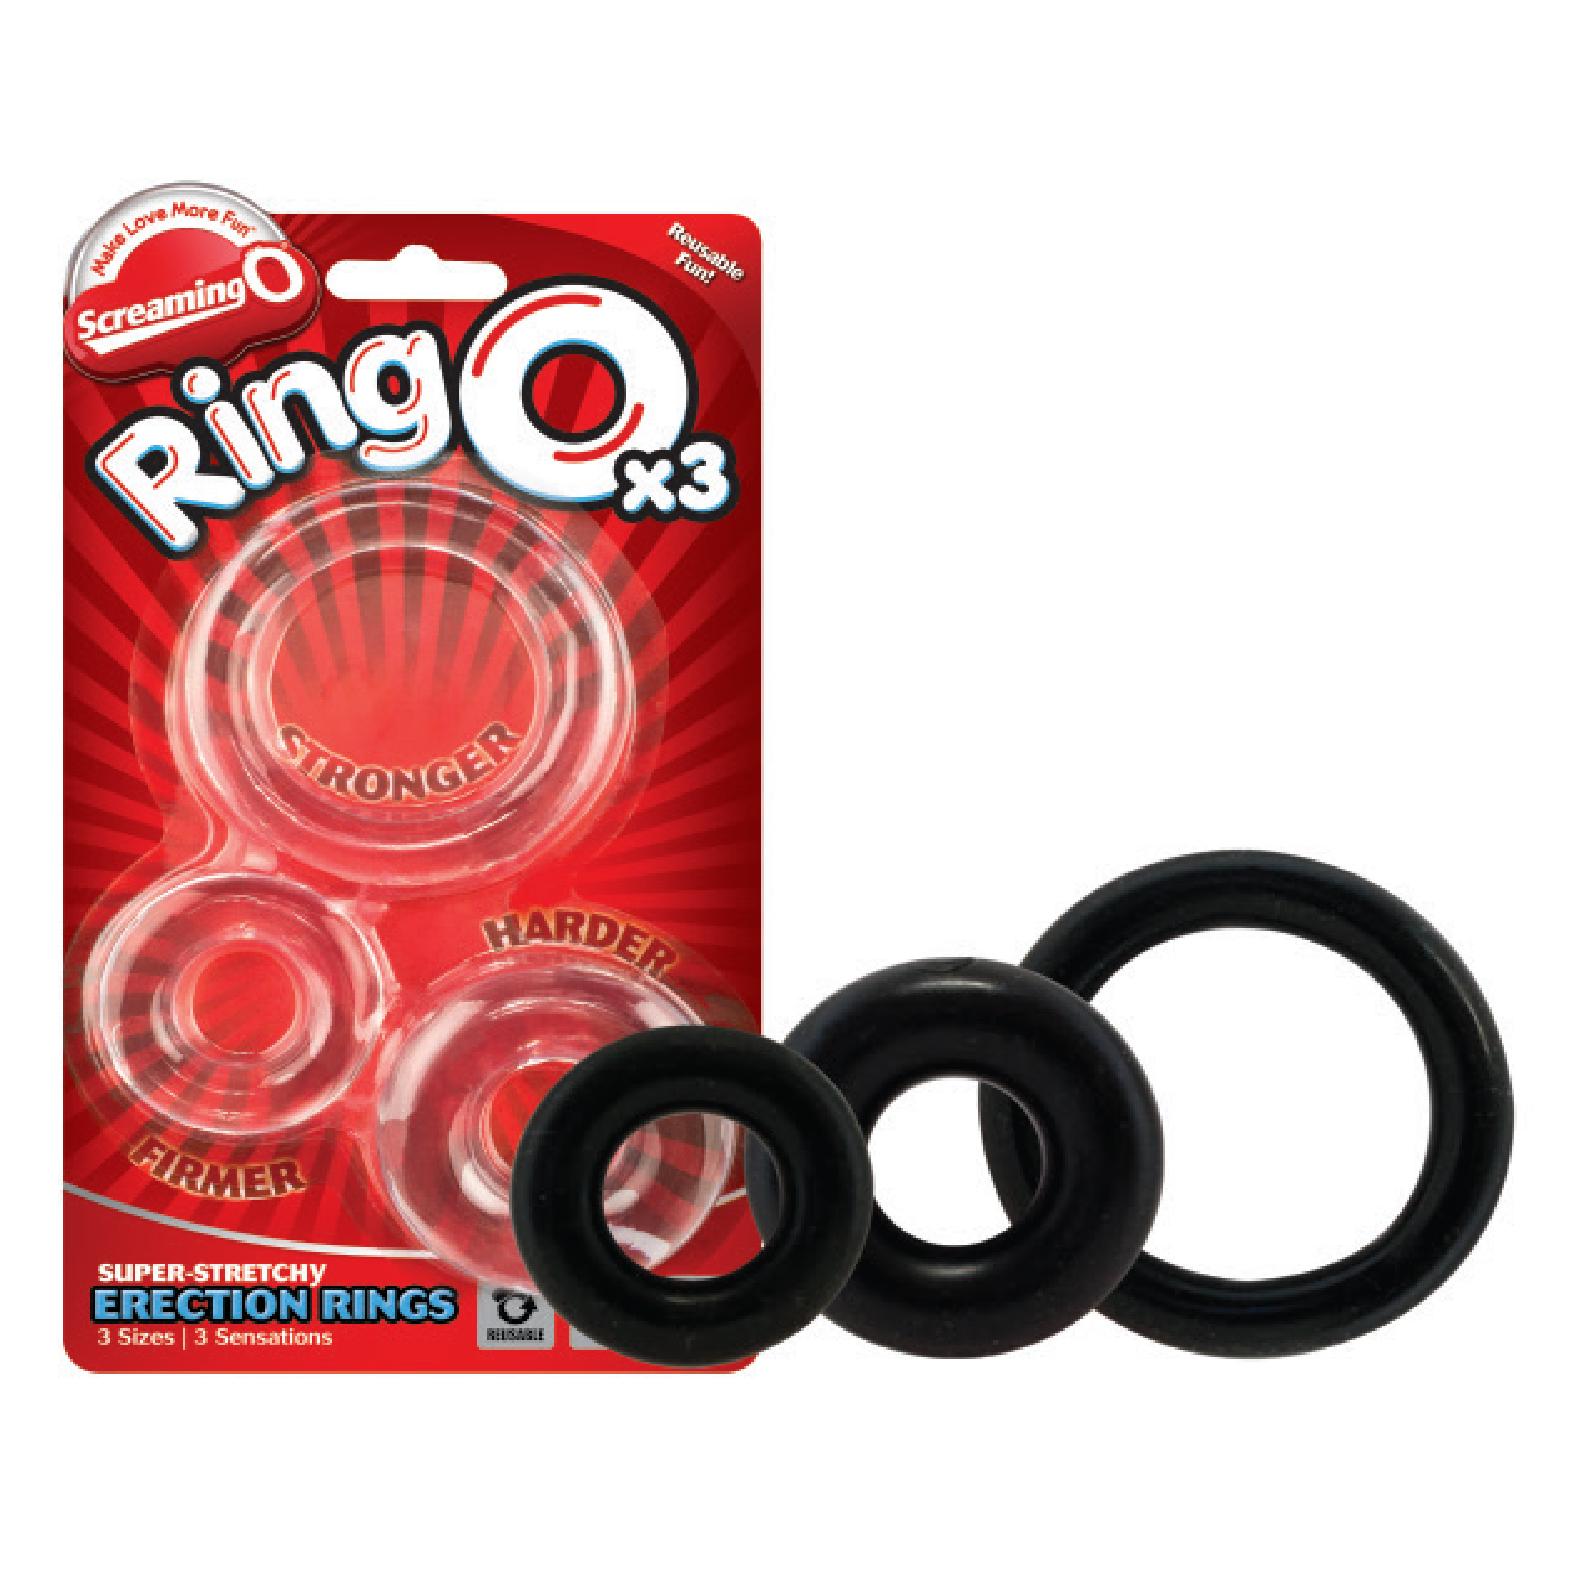 5. Ring O x3